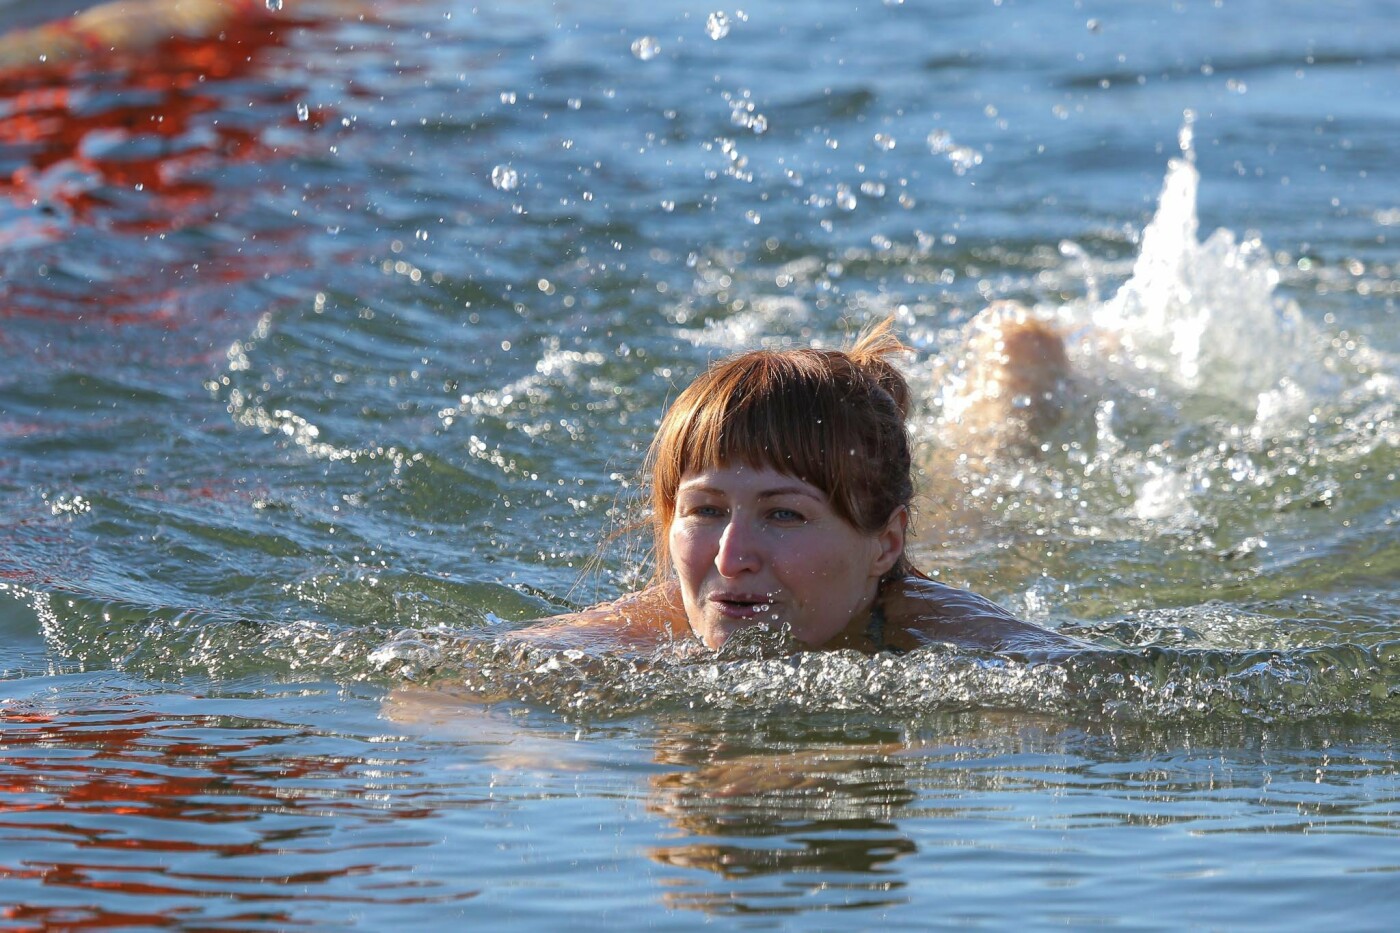 Соревнования по зимнему плаванию в Белгороде